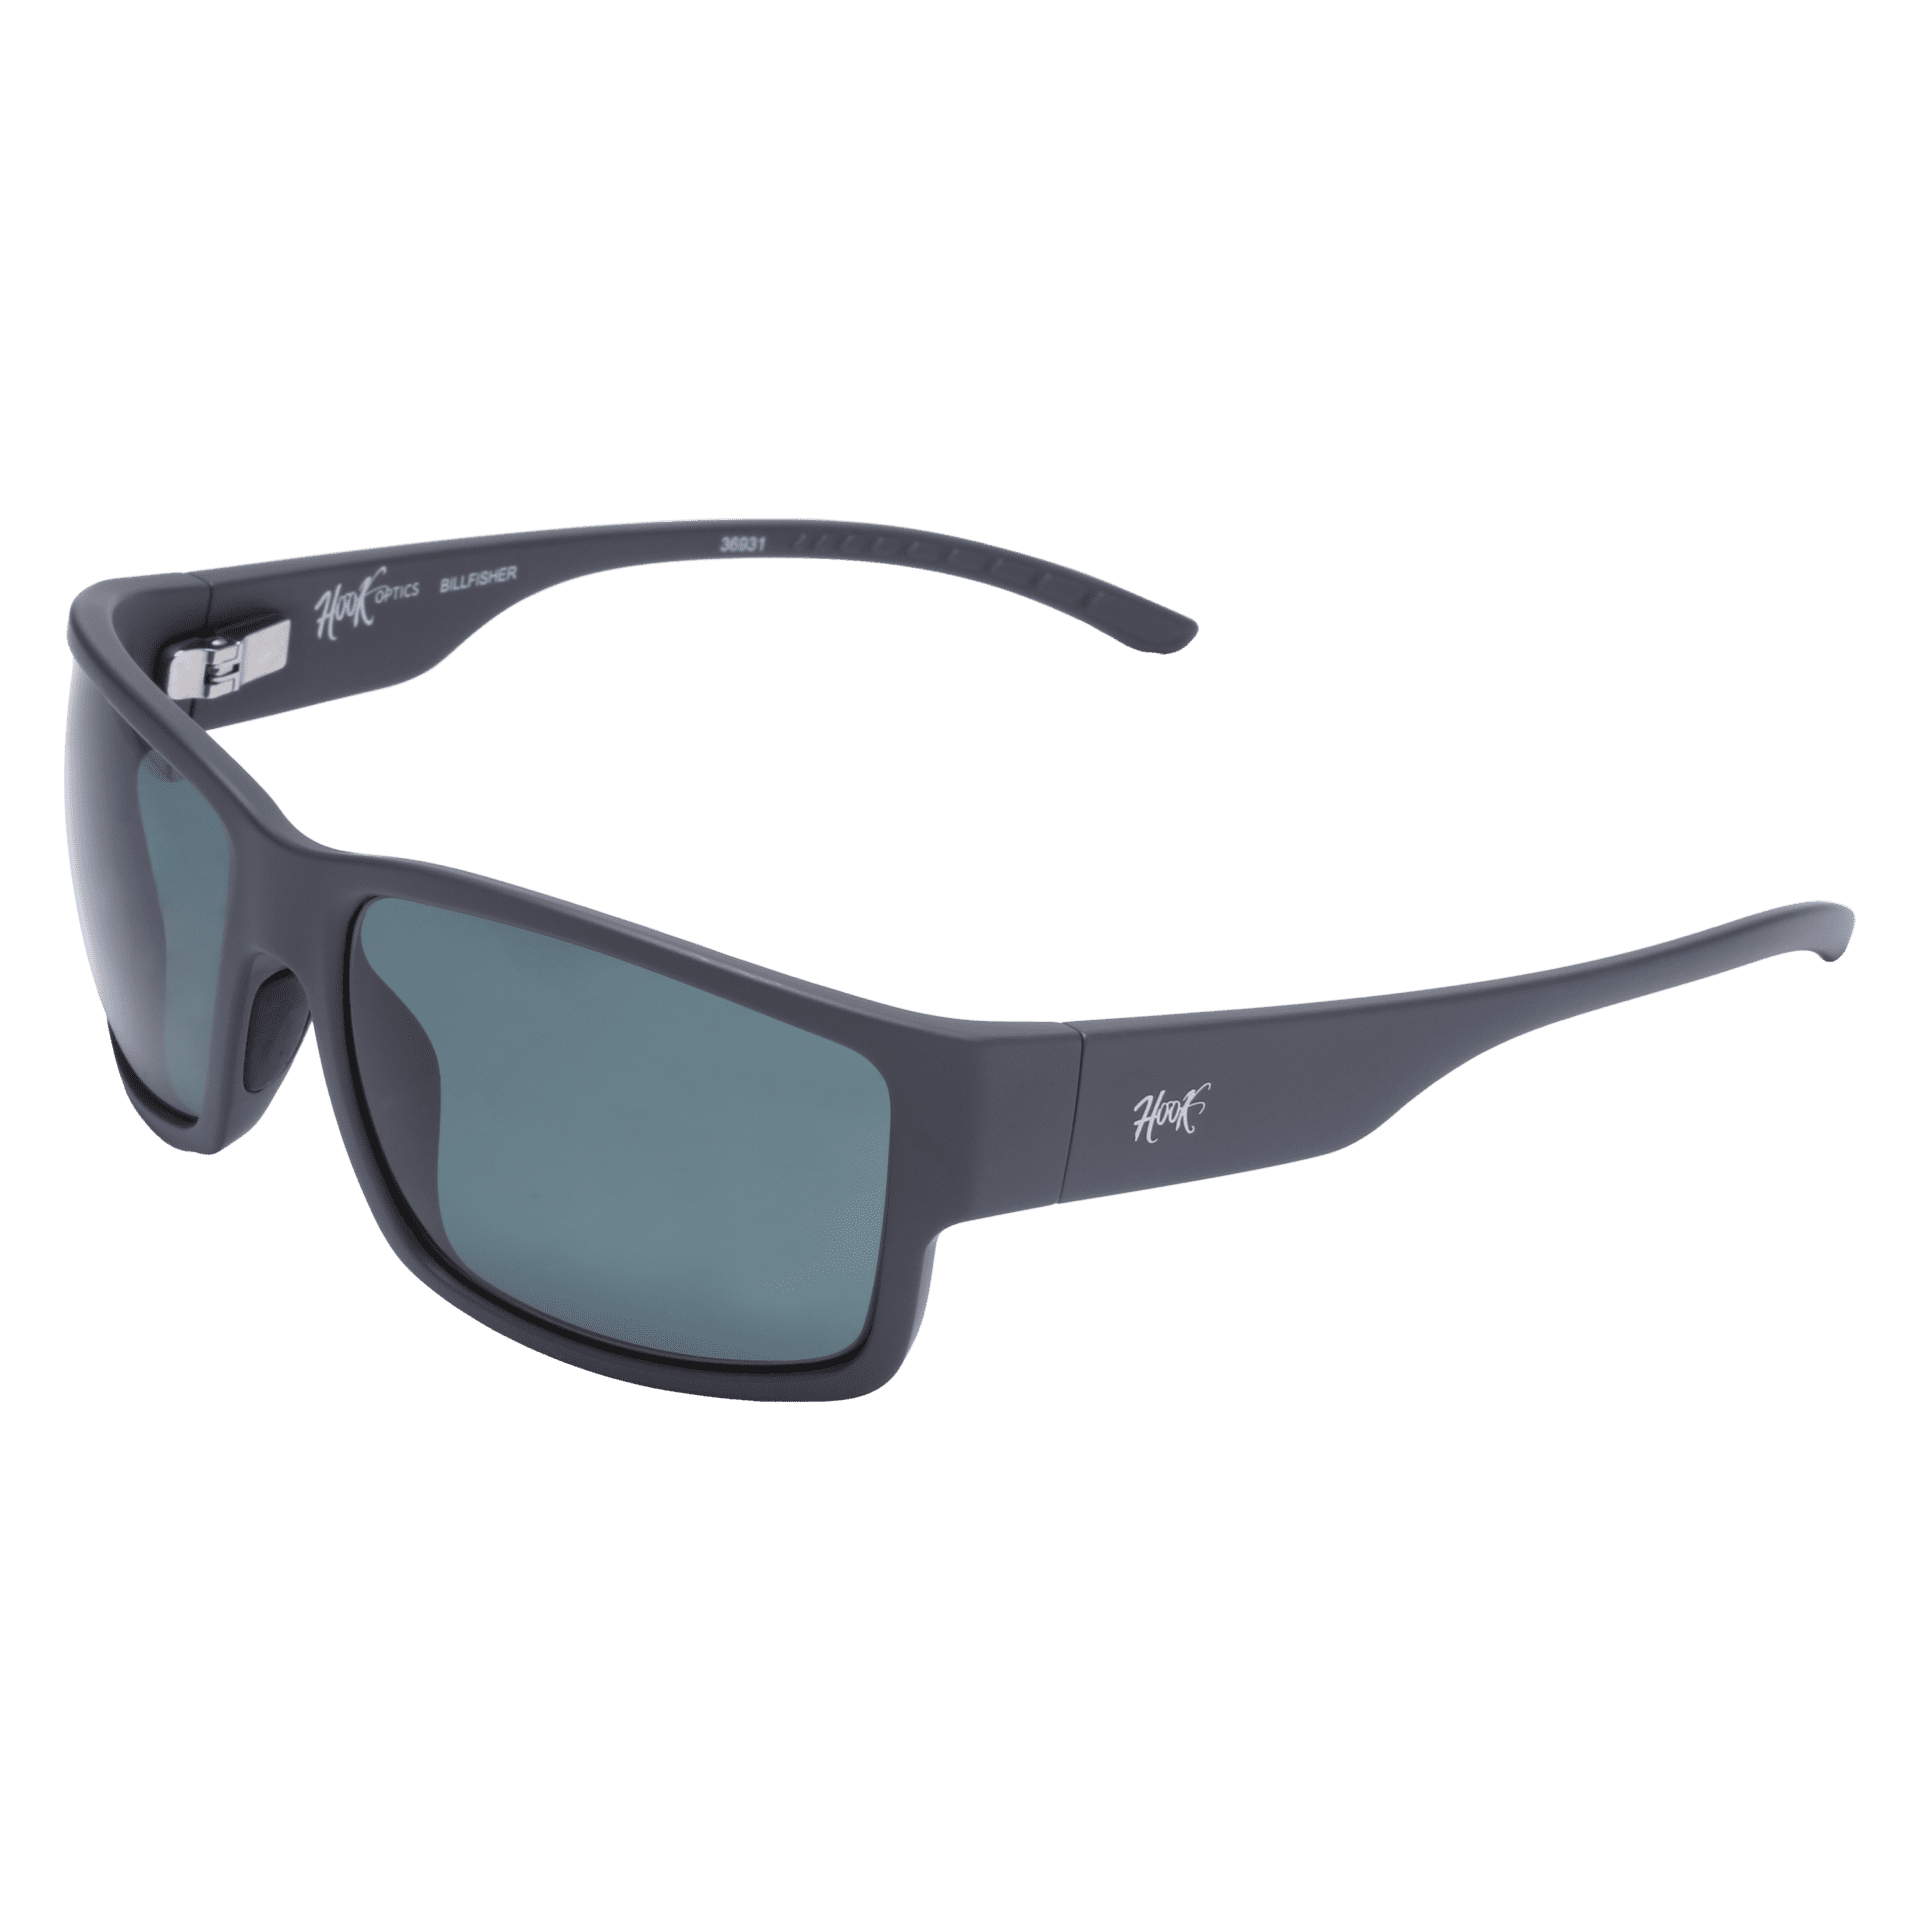 Best Glasses for Fishing Billfisher by Hook Optics Men's Sunglasses